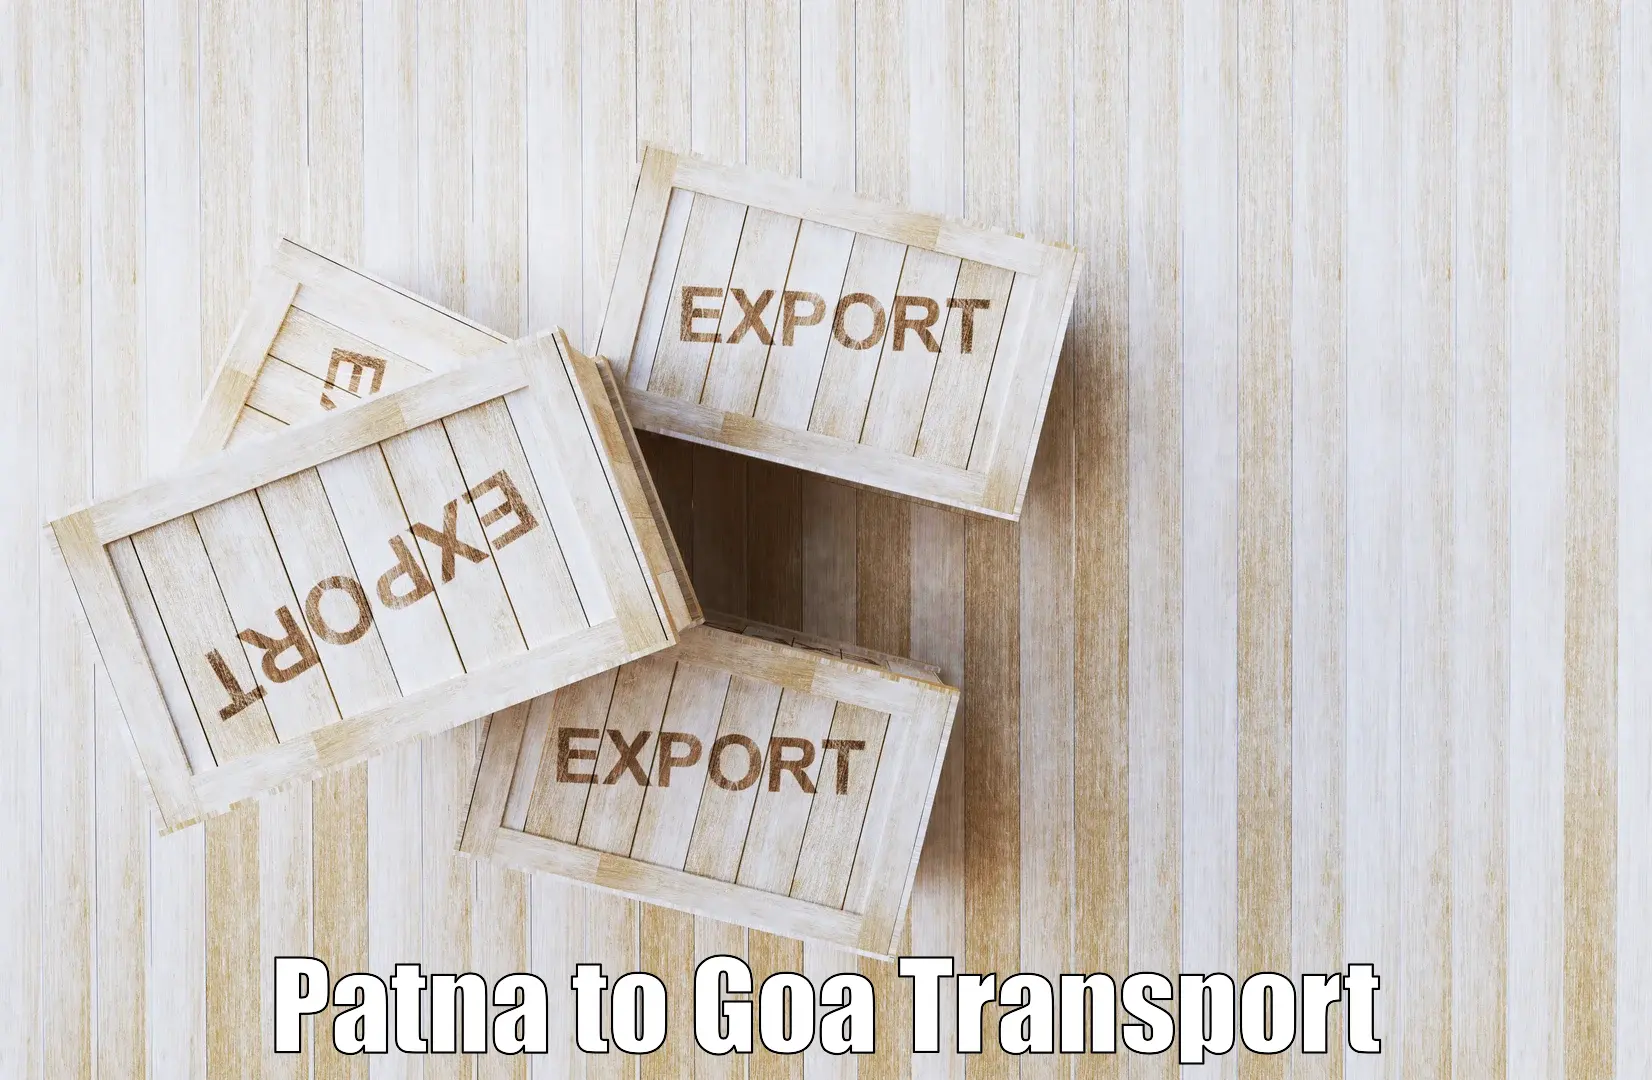 Daily transport service Patna to Bardez